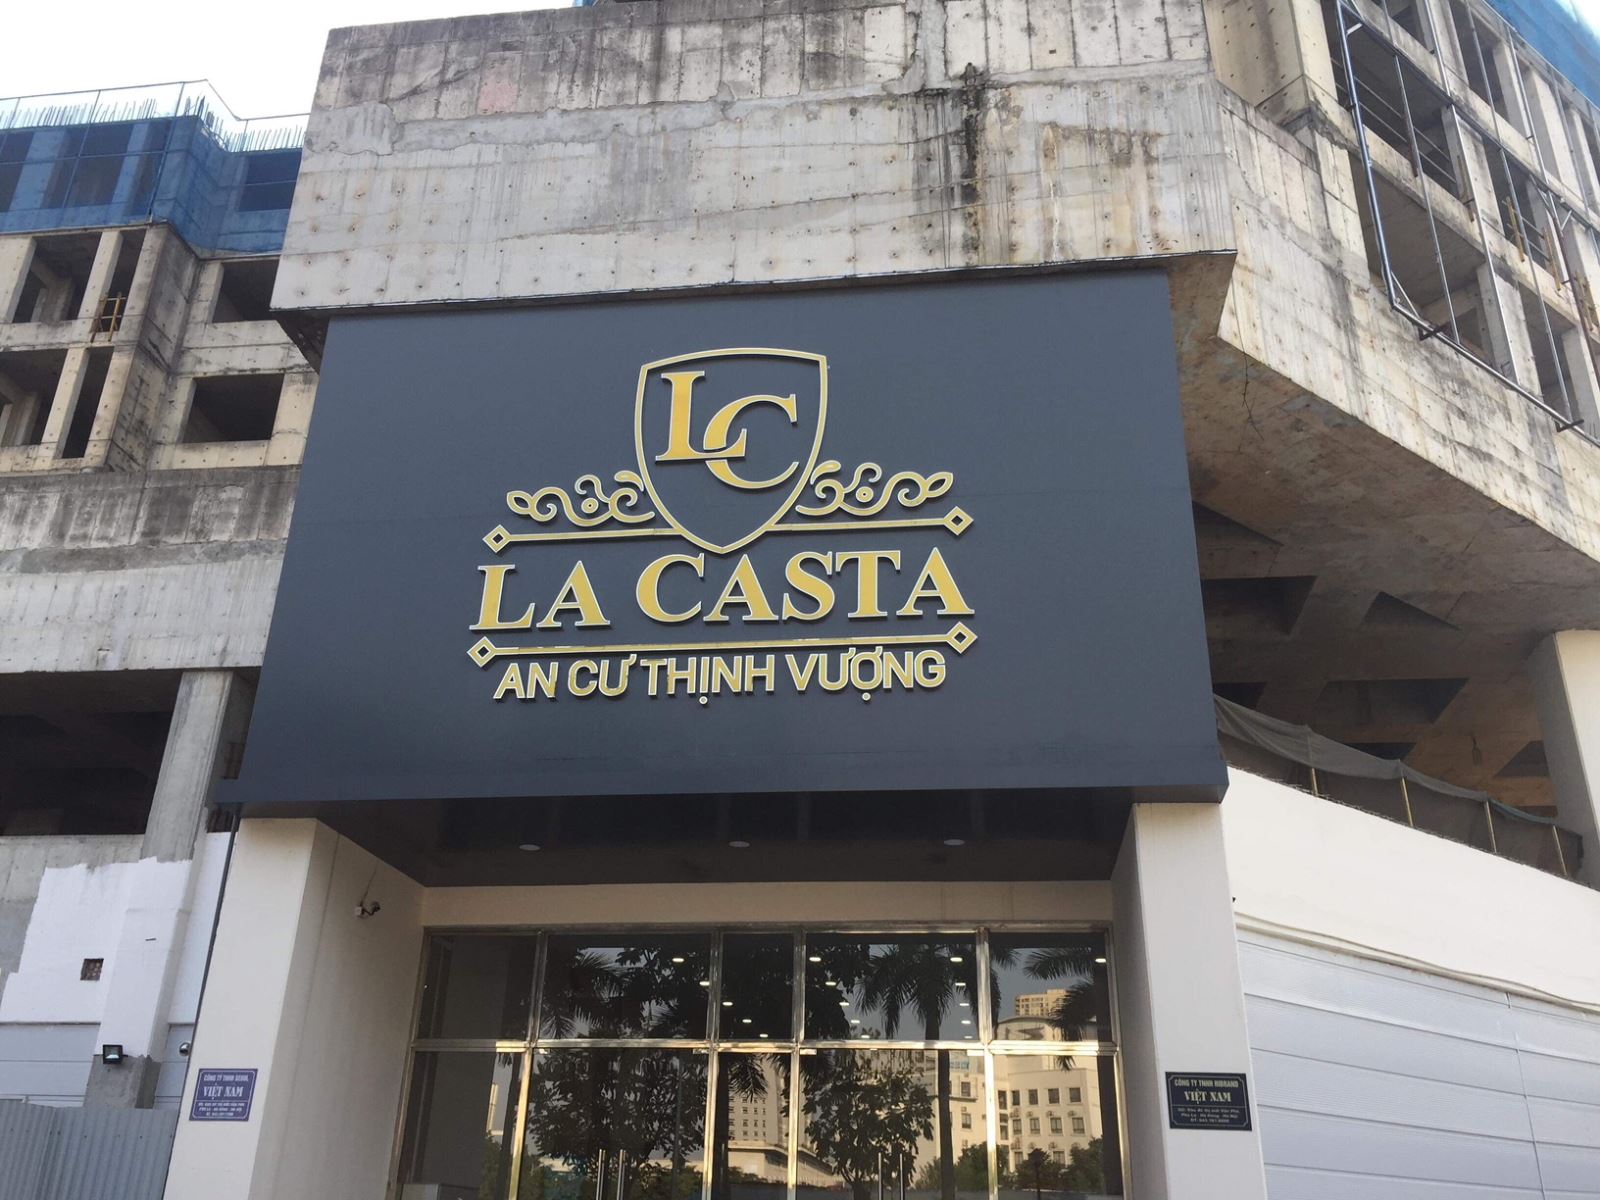 Chủ đầu tư Dự án La Casta bị cấm bán nhà trong khu đô thị Văn Phú?